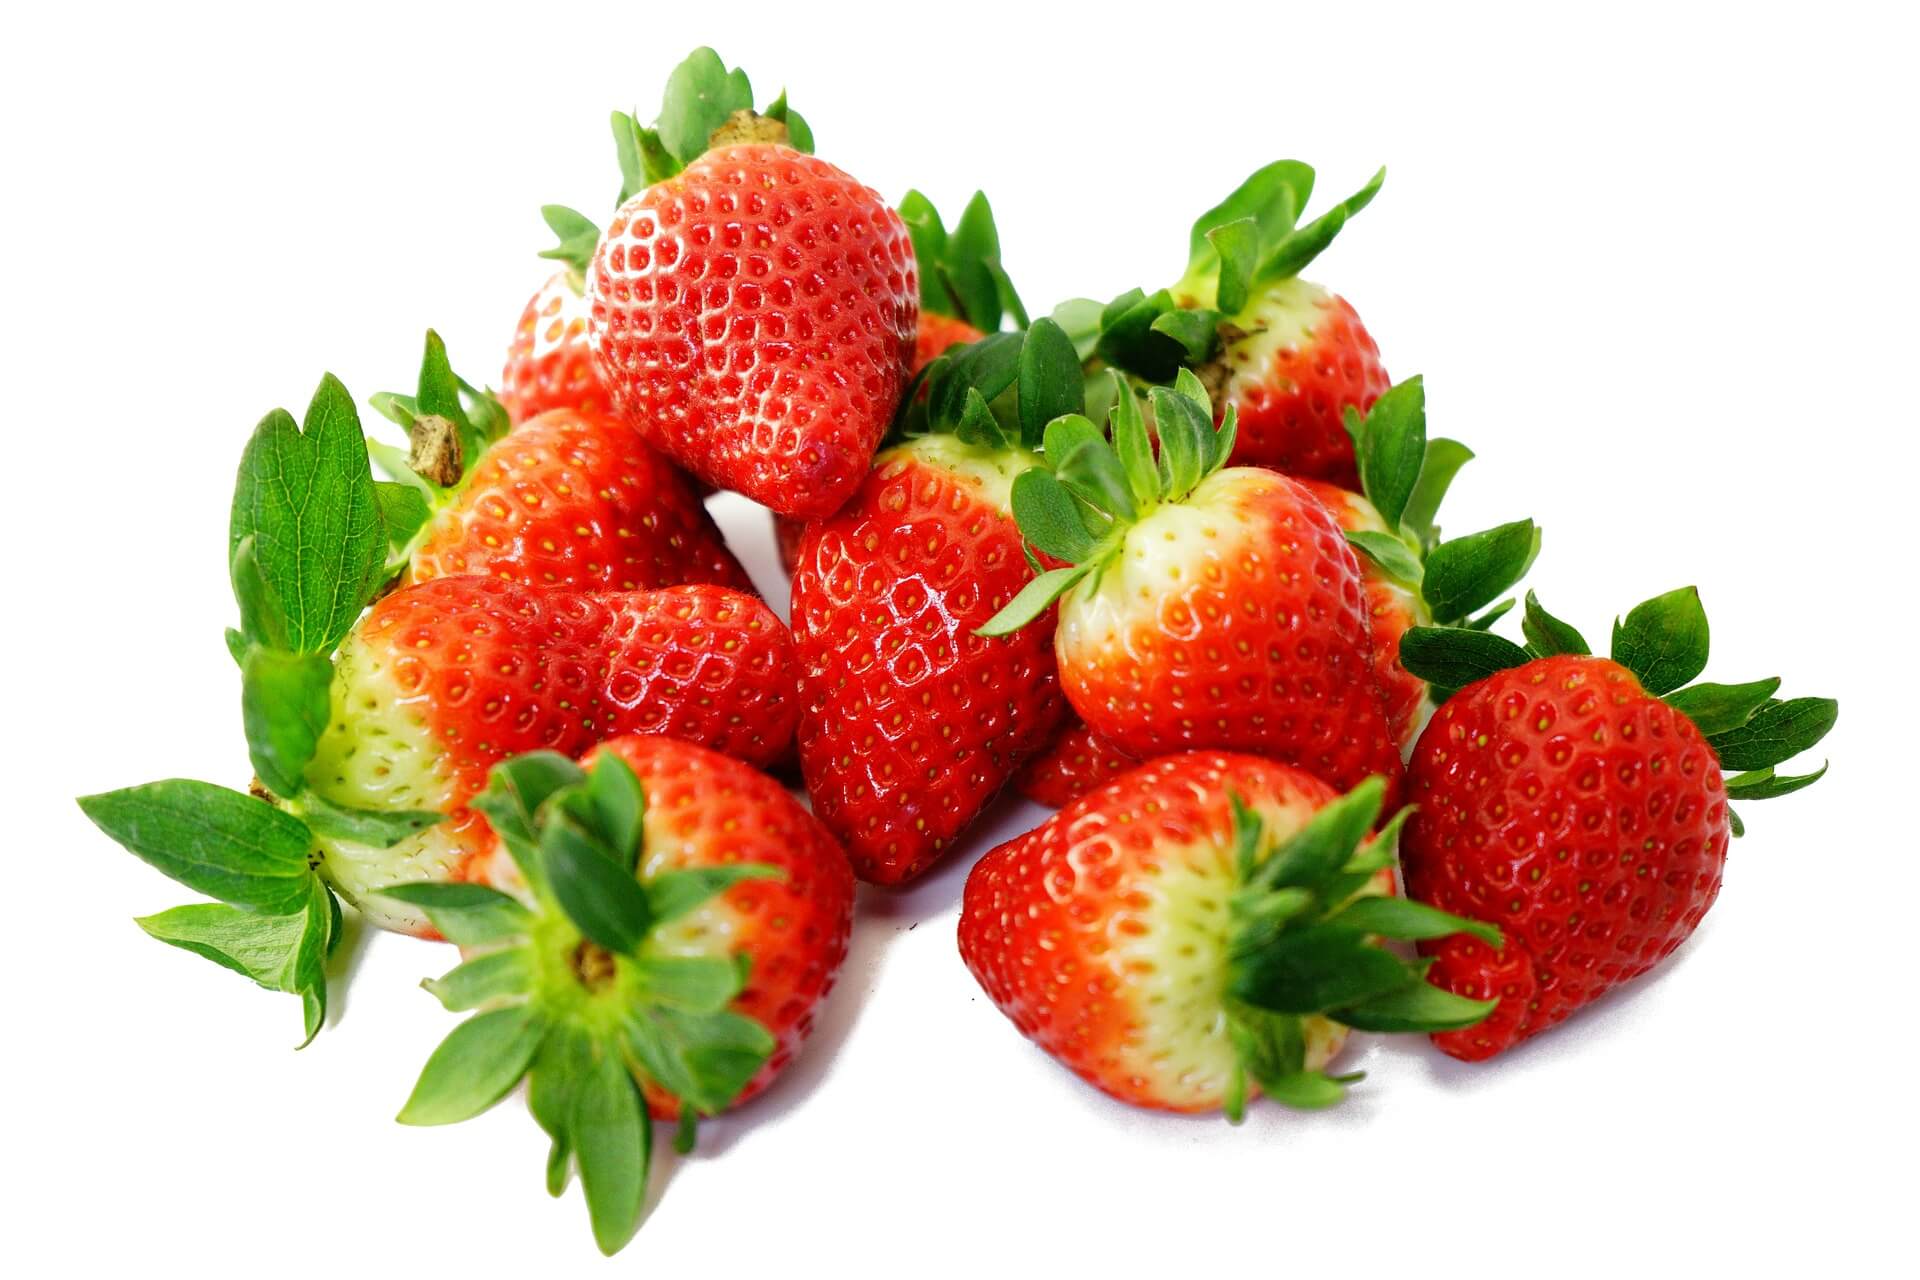 strawberries-272812_1920-1.jpg